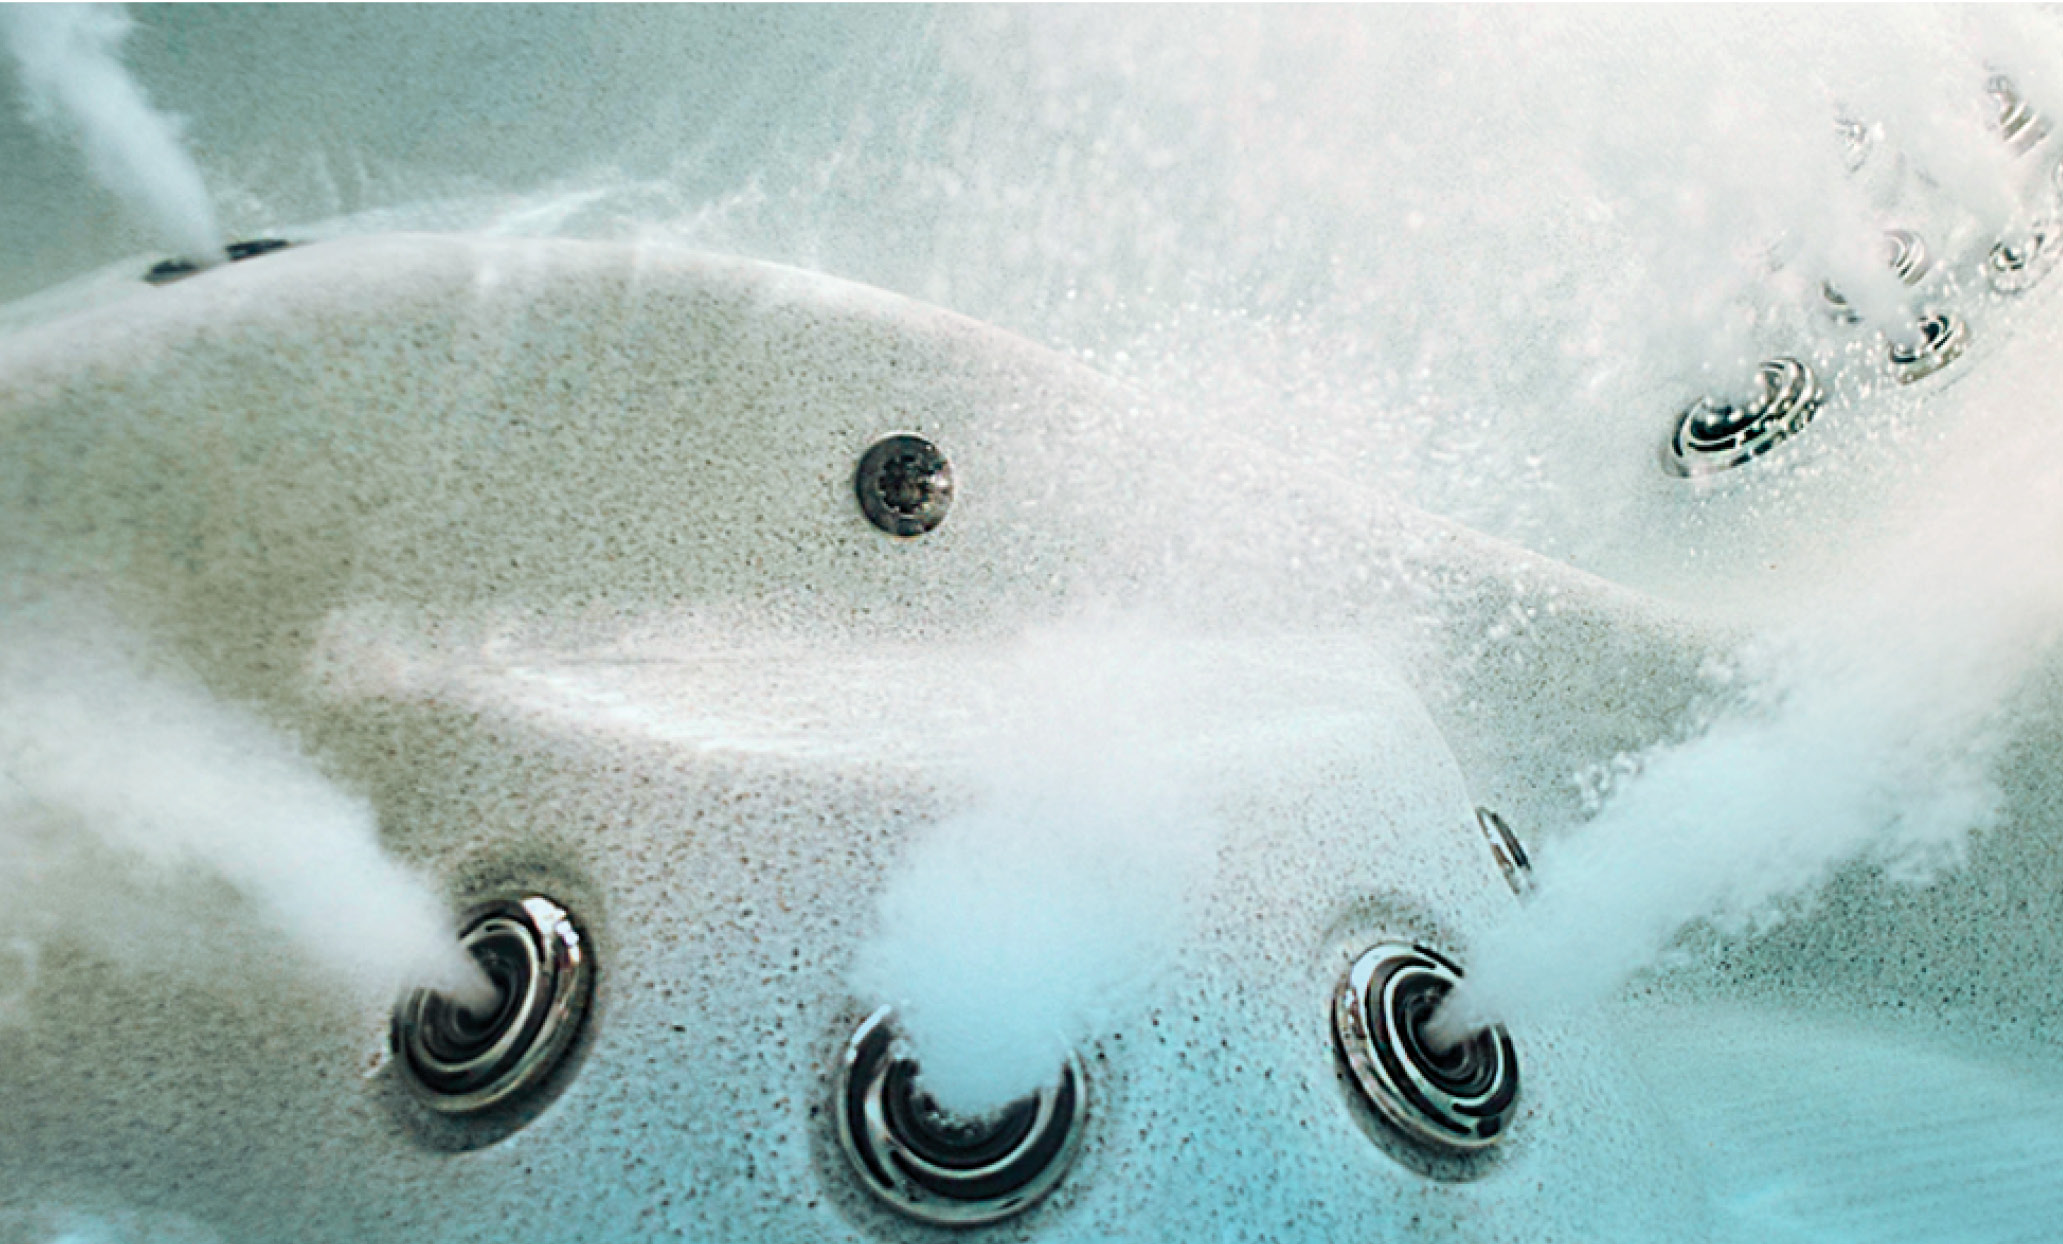 Onderwaterbeeld van de jets in een bubbelbad